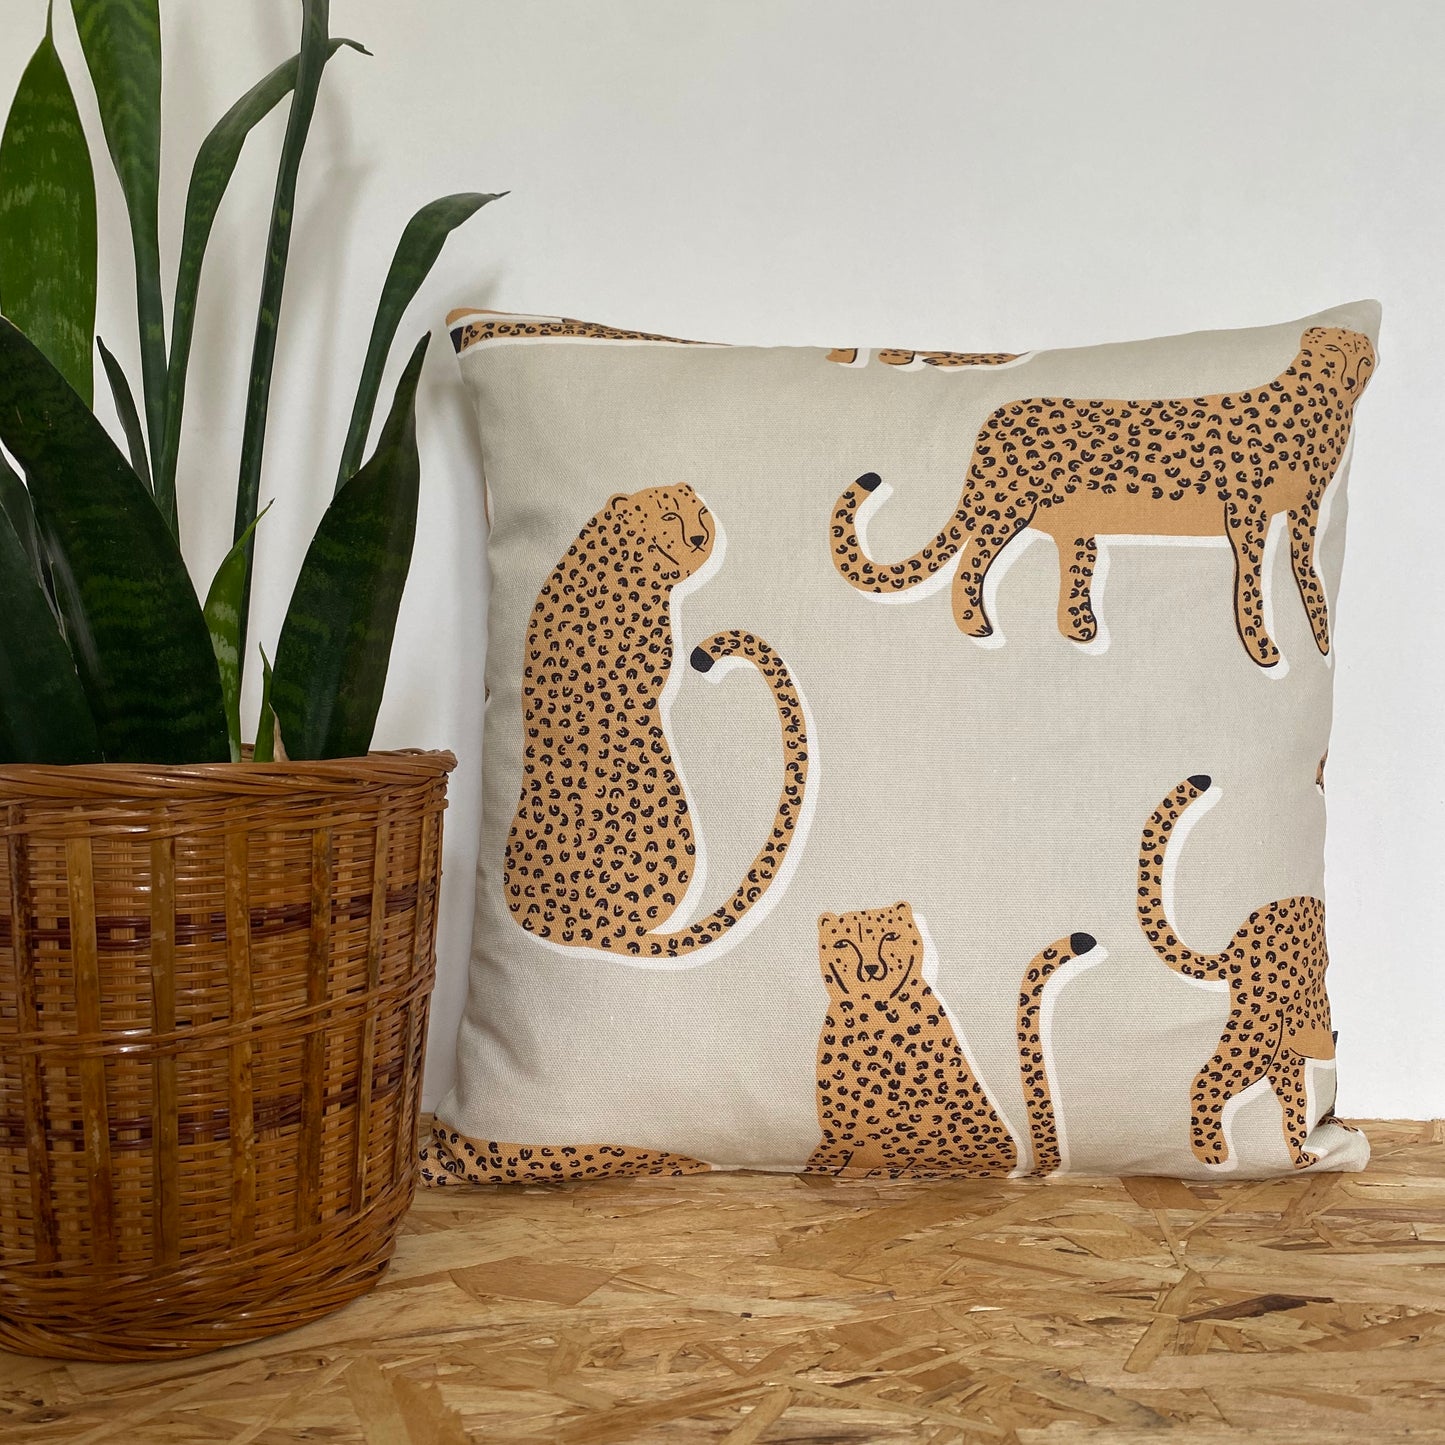 Leopard Cushion - Natural